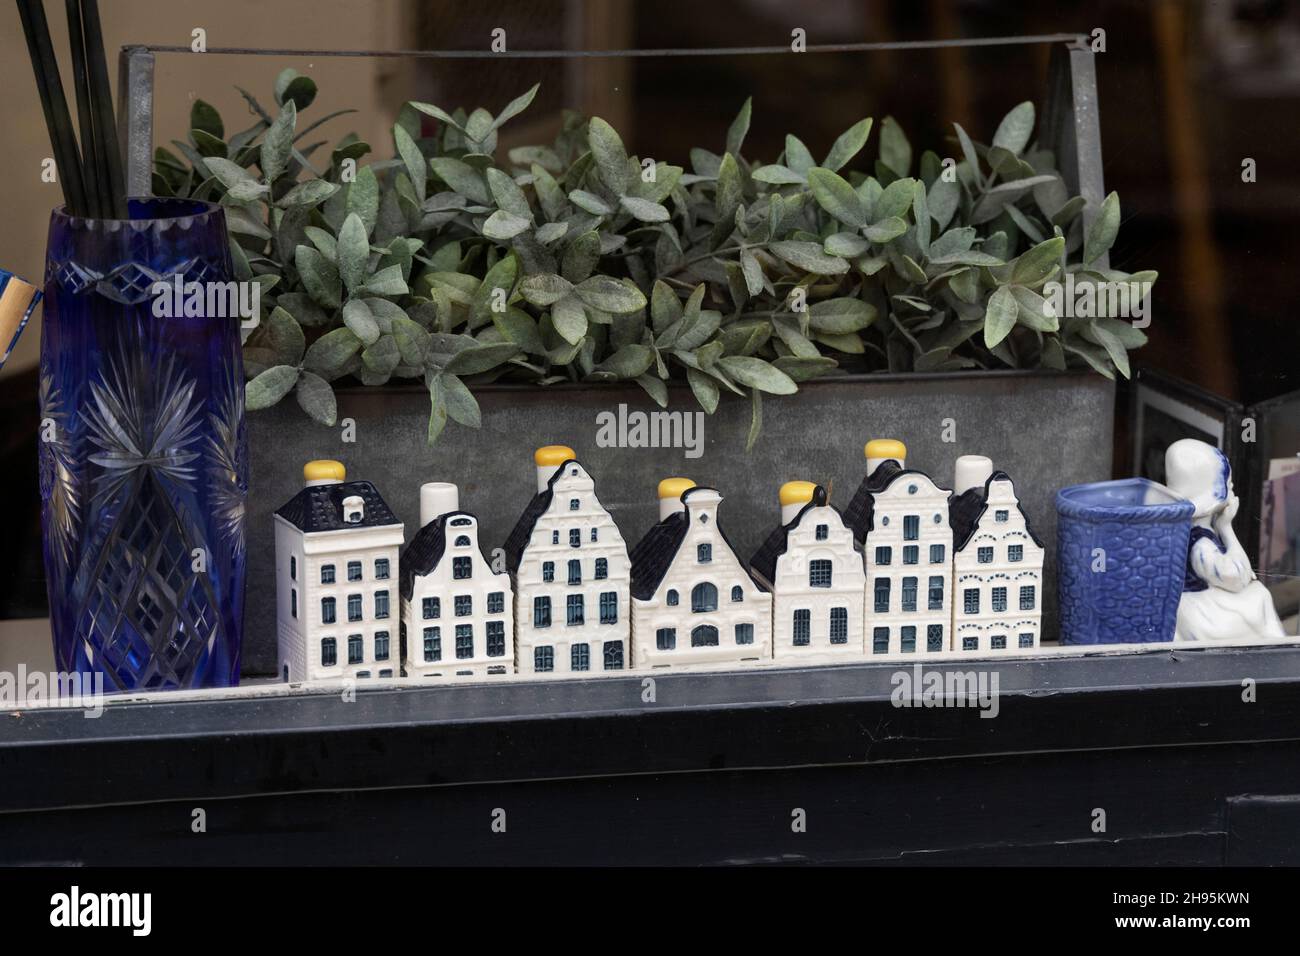 Bottiglie in ceramica blu e bianca modellate sulla tradizionale architettura olandese in esposizione in una finestra ad Amsterdam, Paesi Bassi. Foto Stock